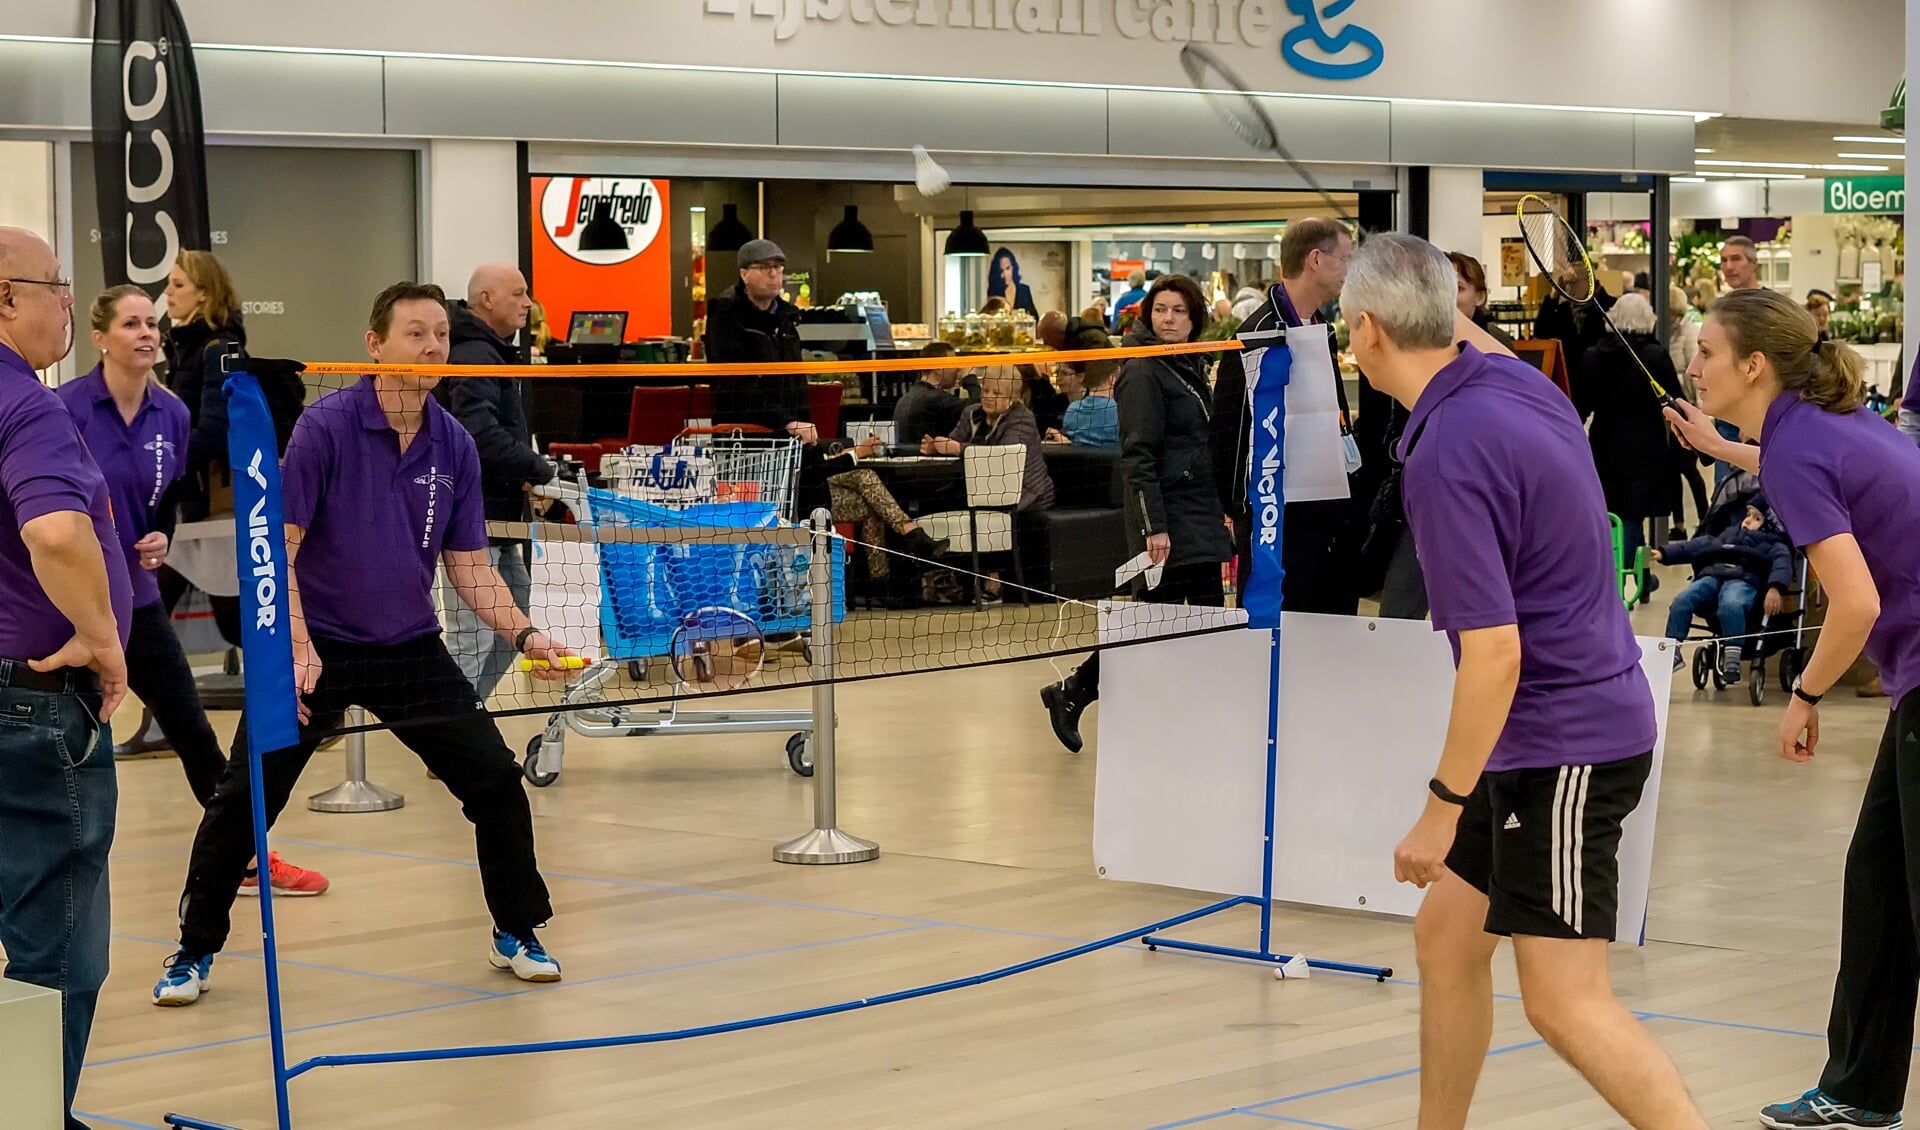 Ervaren leden van BC De Spotvogels laten zien hoe uitdagend een wedstrijdje badminton op niveau kan zijn.